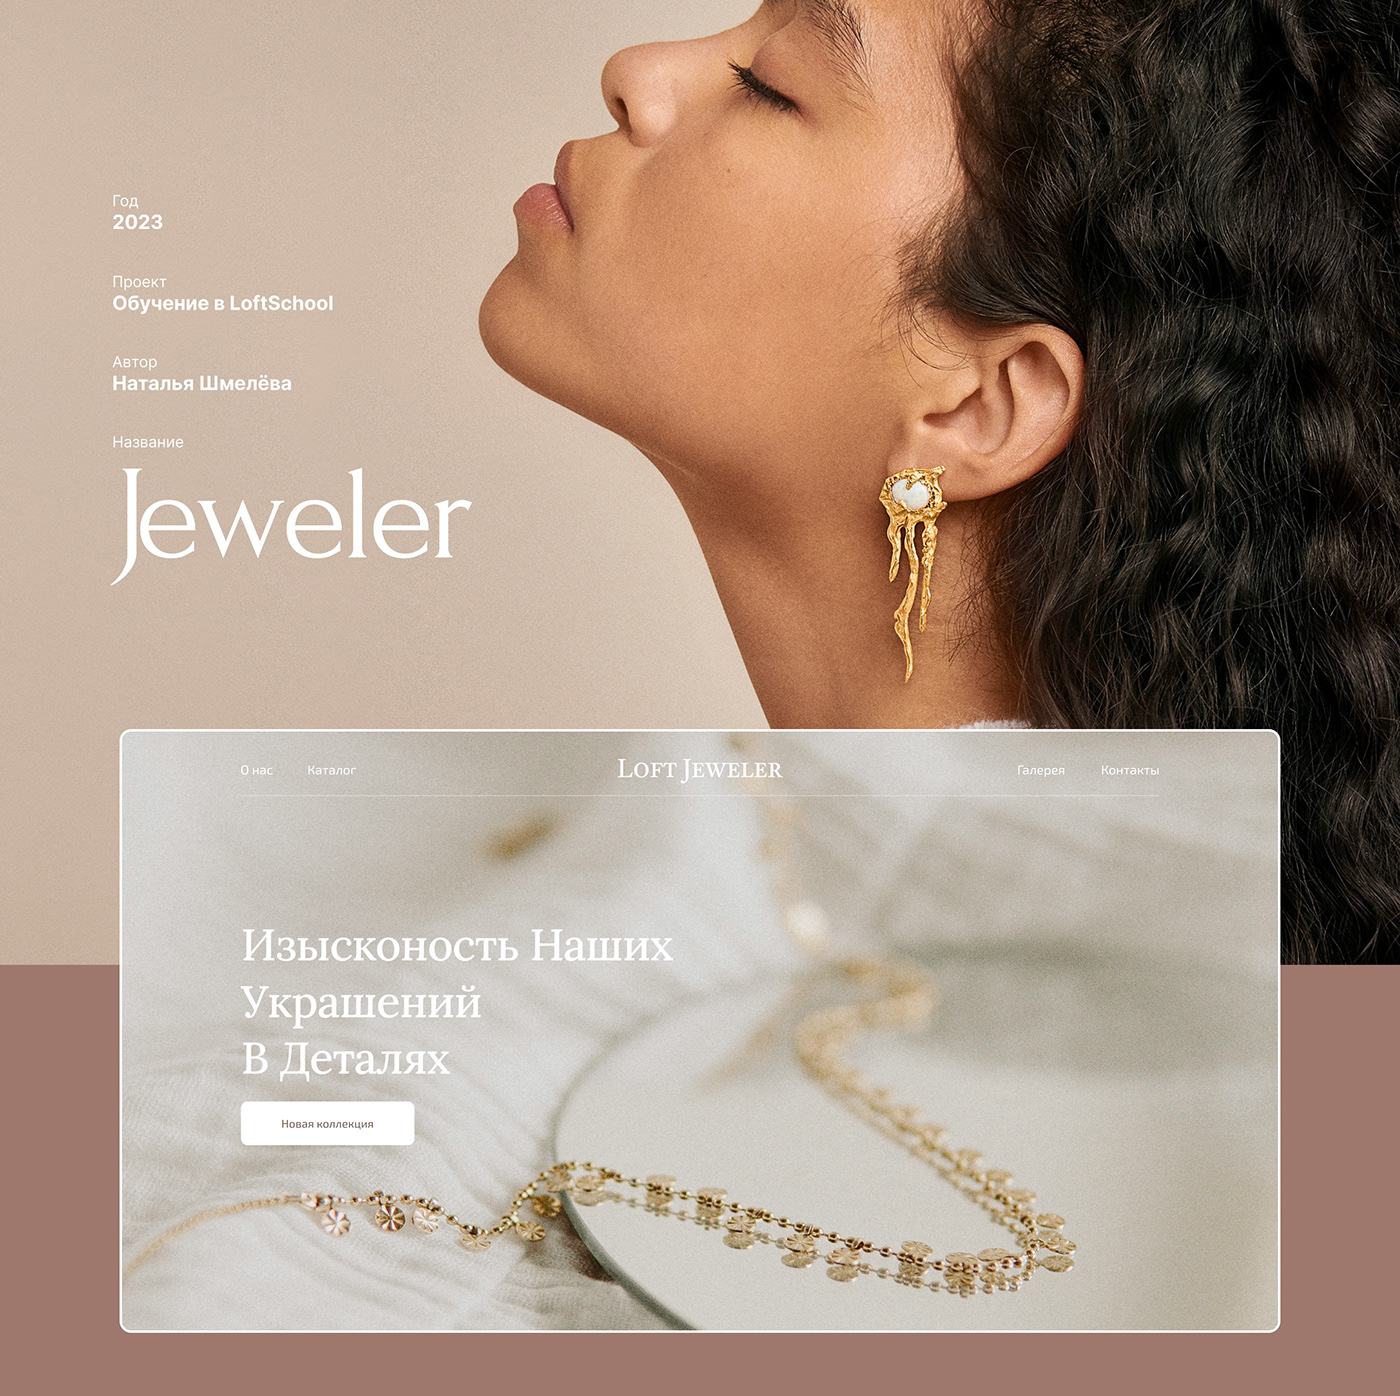 Fashion  Jeweler Jewellery jewelry lending ui design веб-дизайн лендинг ювелирные изделия ювелирные украшения